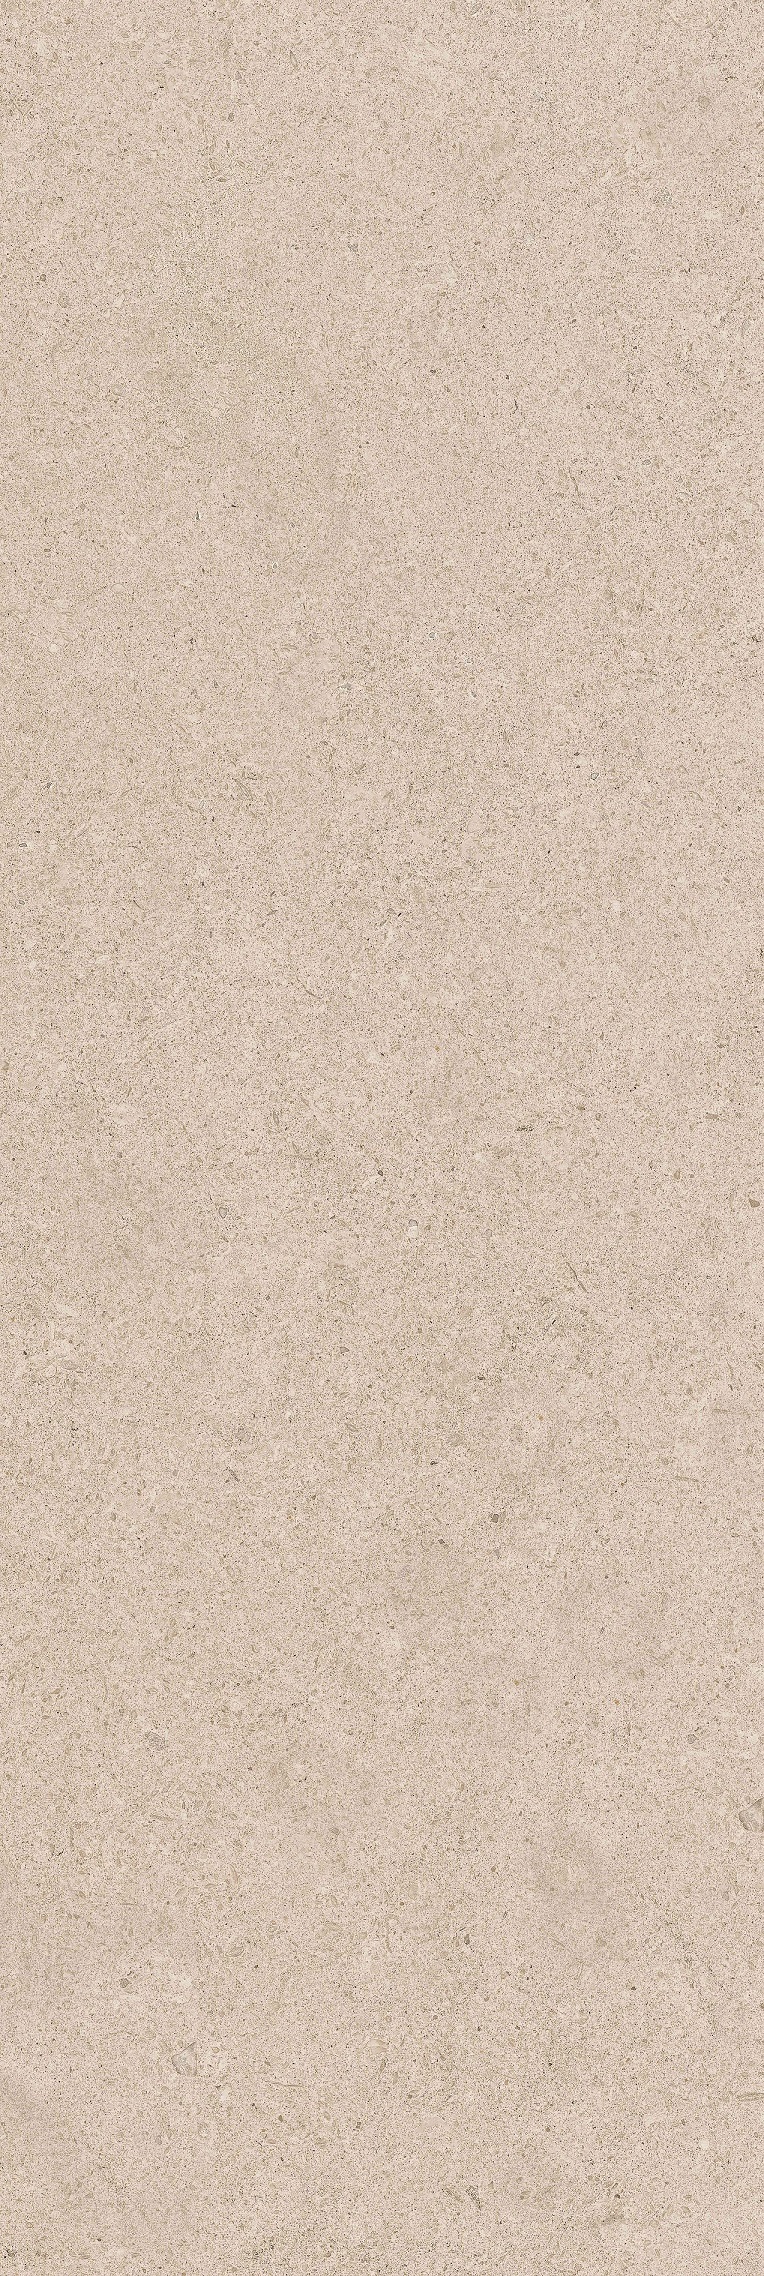 00-00-5-17-01-11-3345 Настенная Salutami Granite 